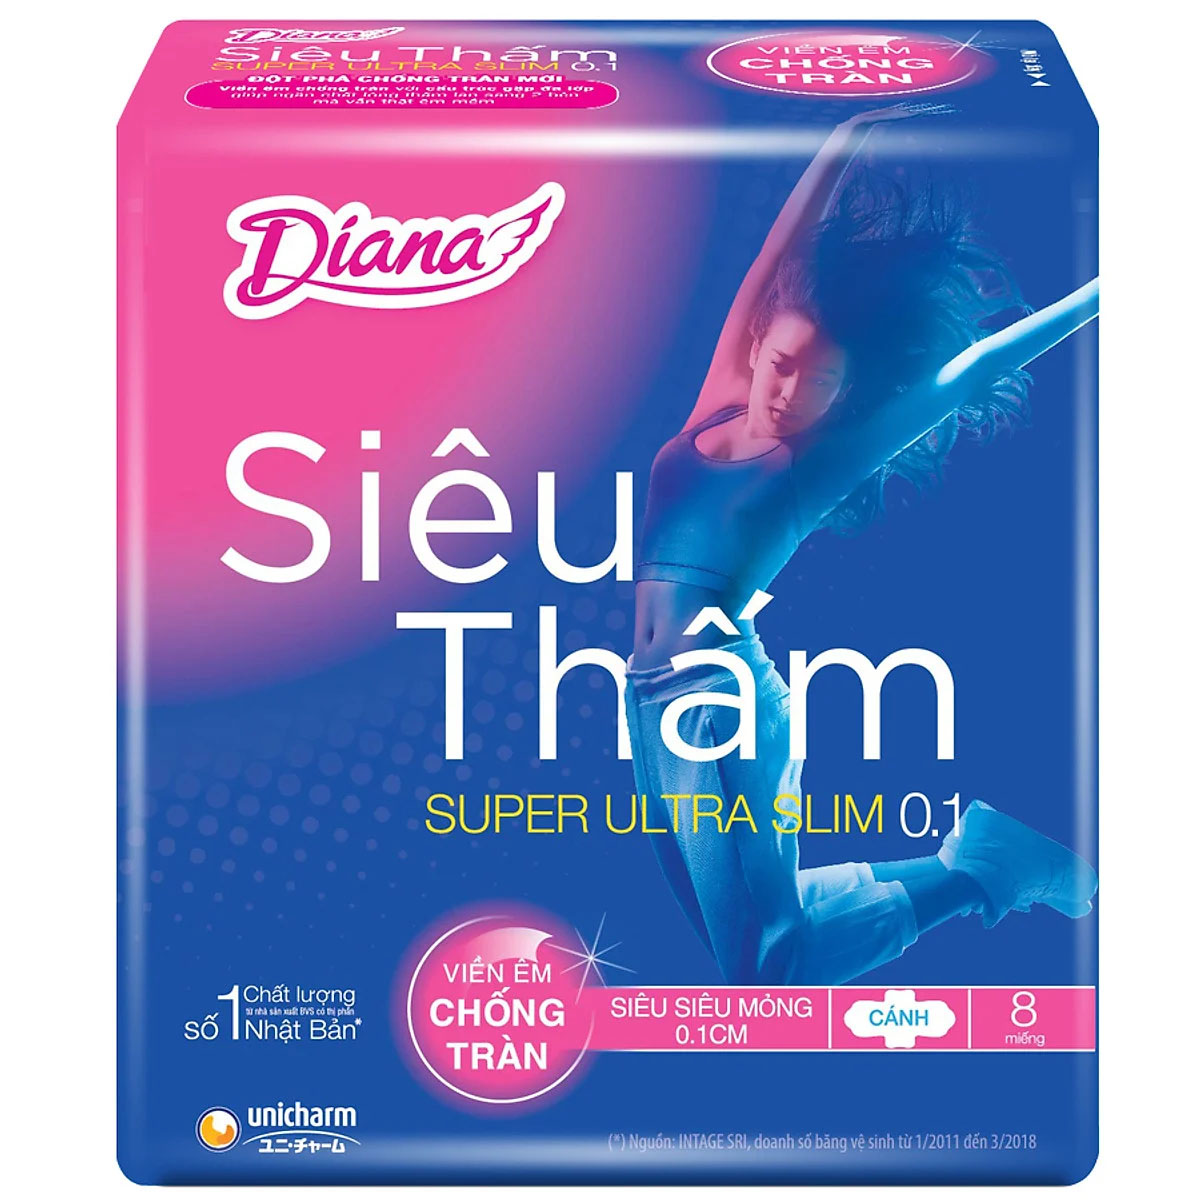 Diana Super Ultra Slim